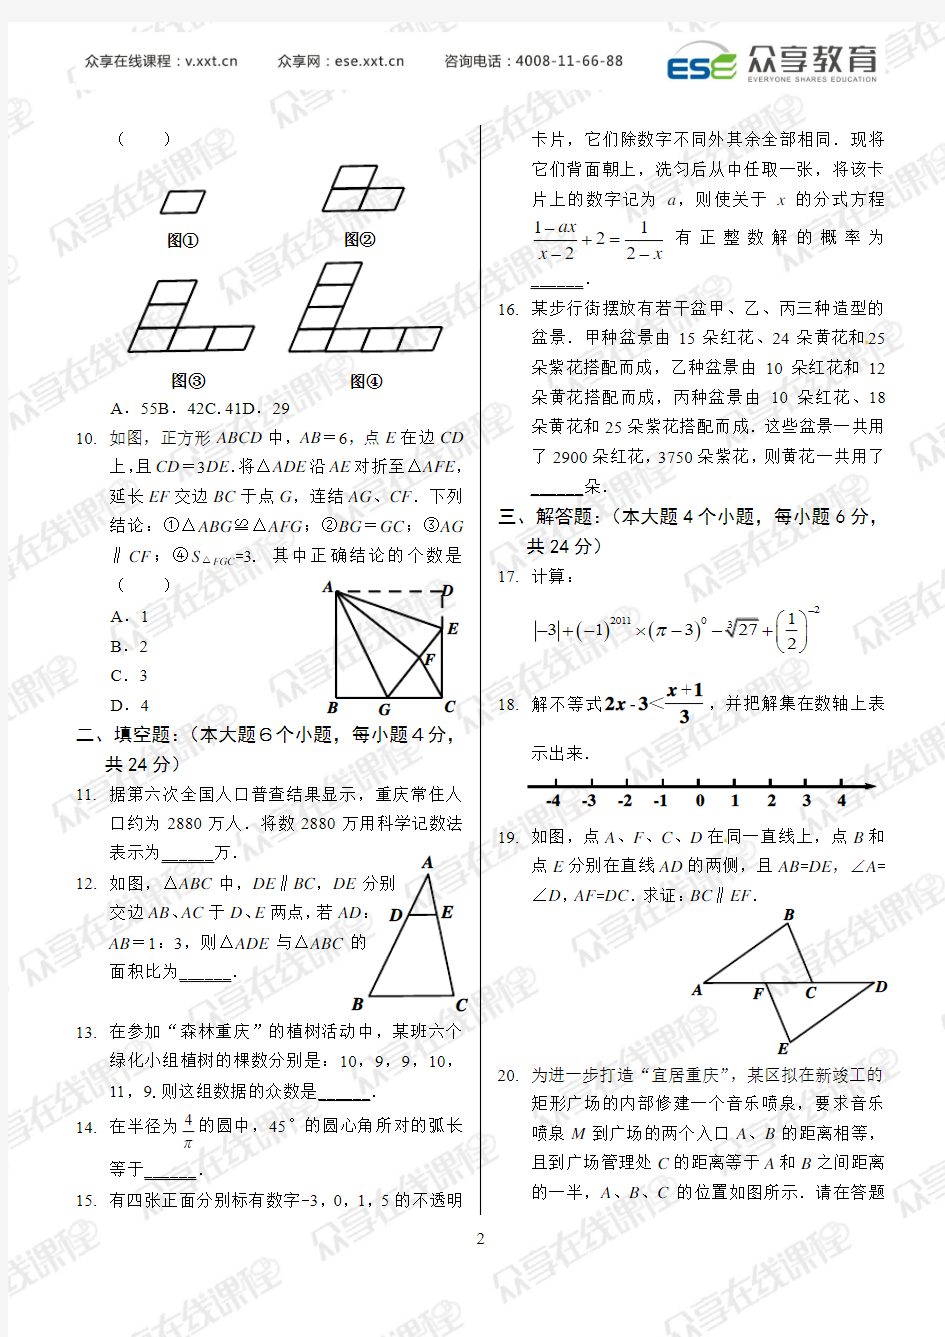 2011年重庆市中考数学试题及答案[1]